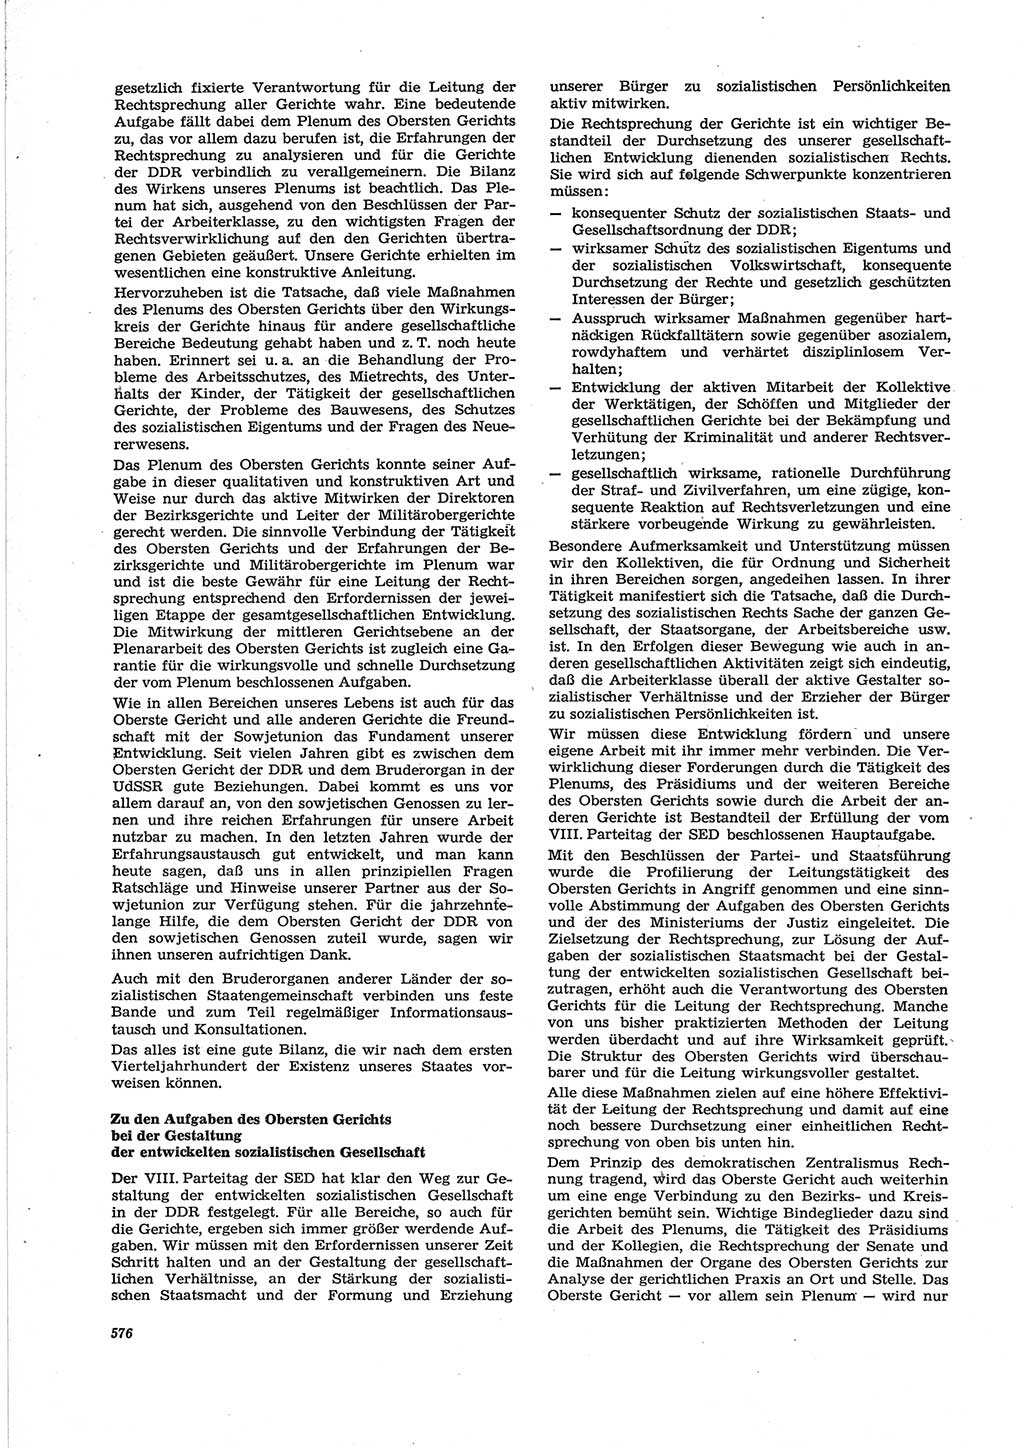 Neue Justiz (NJ), Zeitschrift für Recht und Rechtswissenschaft [Deutsche Demokratische Republik (DDR)], 28. Jahrgang 1974, Seite 576 (NJ DDR 1974, S. 576)